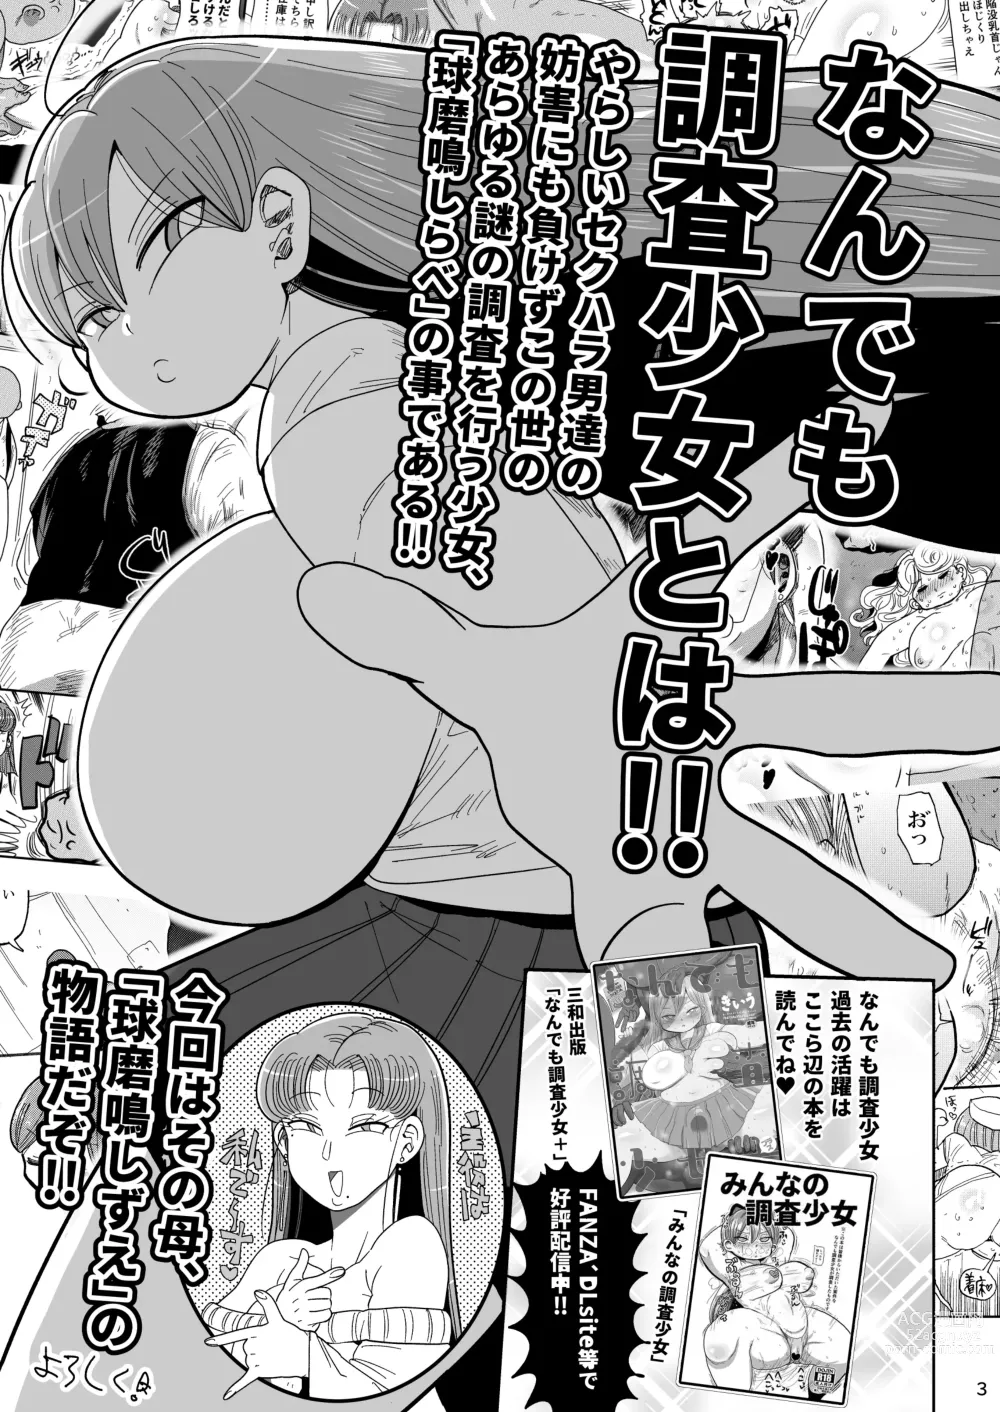 Page 2 of doujinshi Nandemo Chousa Mama Kuma Shizue ha TEIKO ga dekinai